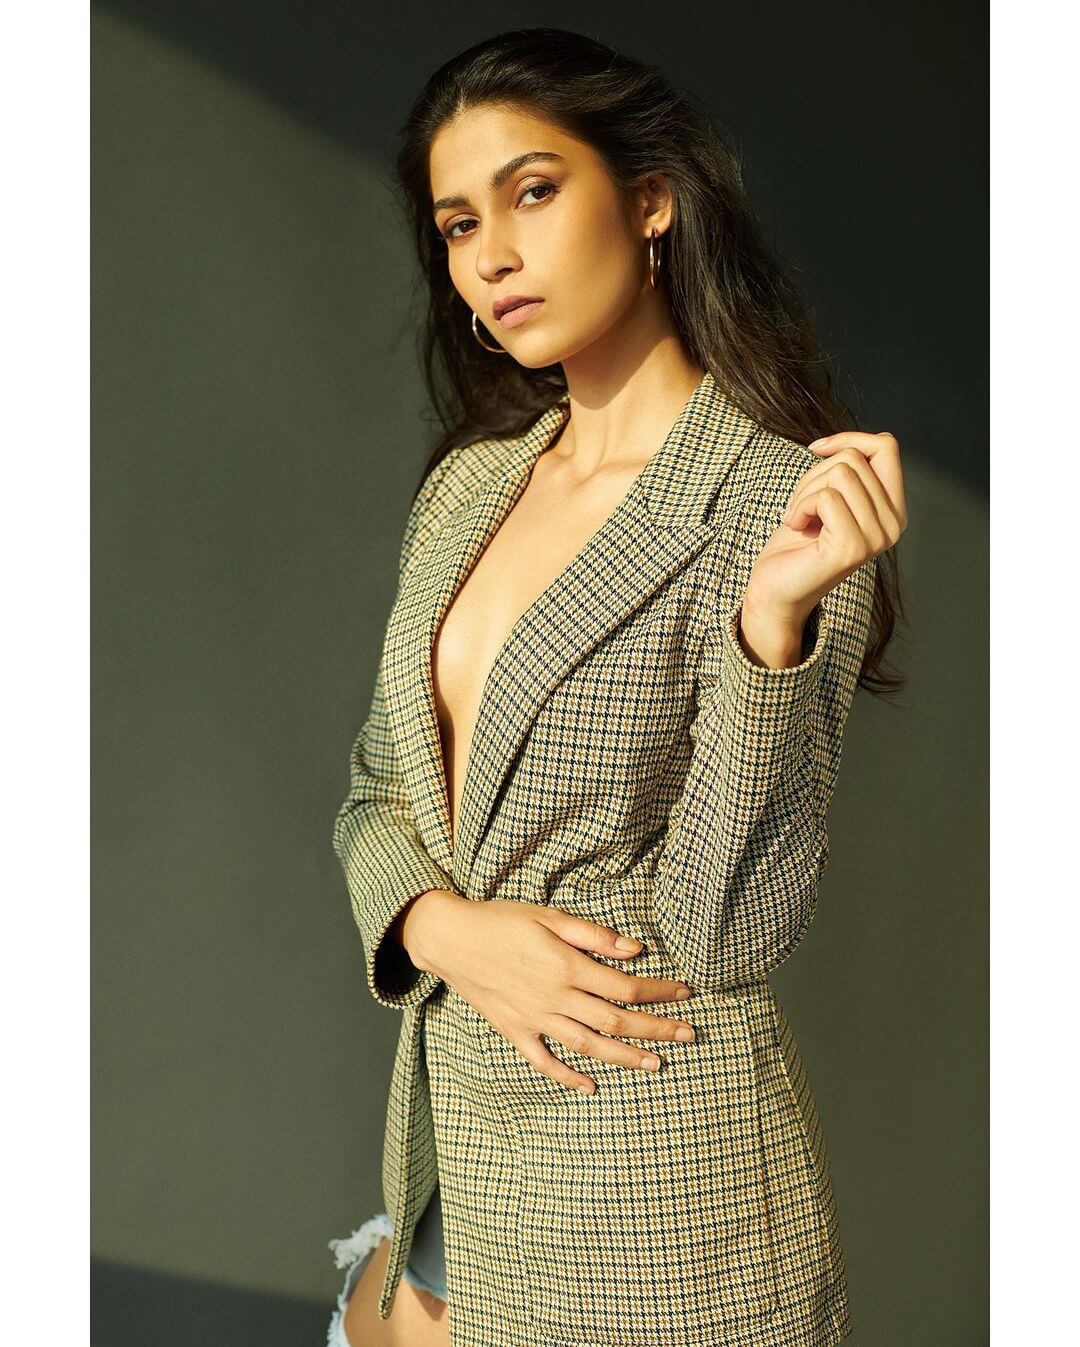 Actress Samara Tijori sexy look in suit